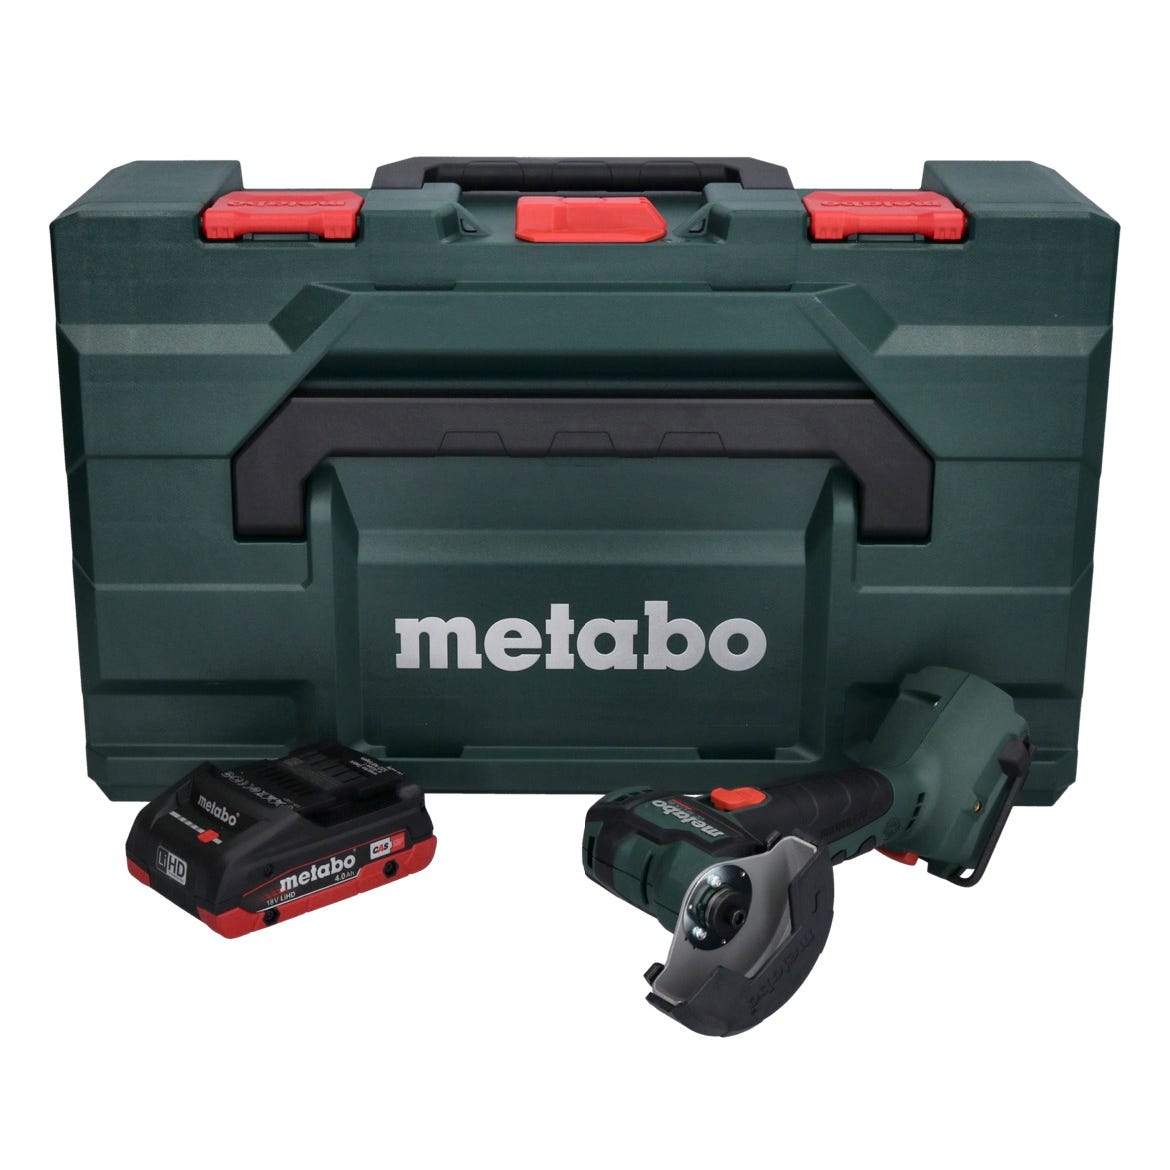 Metabo Meuleuse d'angle sans fil CC 18 LTX Brushless + 1x Batterie 4,0Ah + Coffret de transport MetaLoc - sans chargeur 0